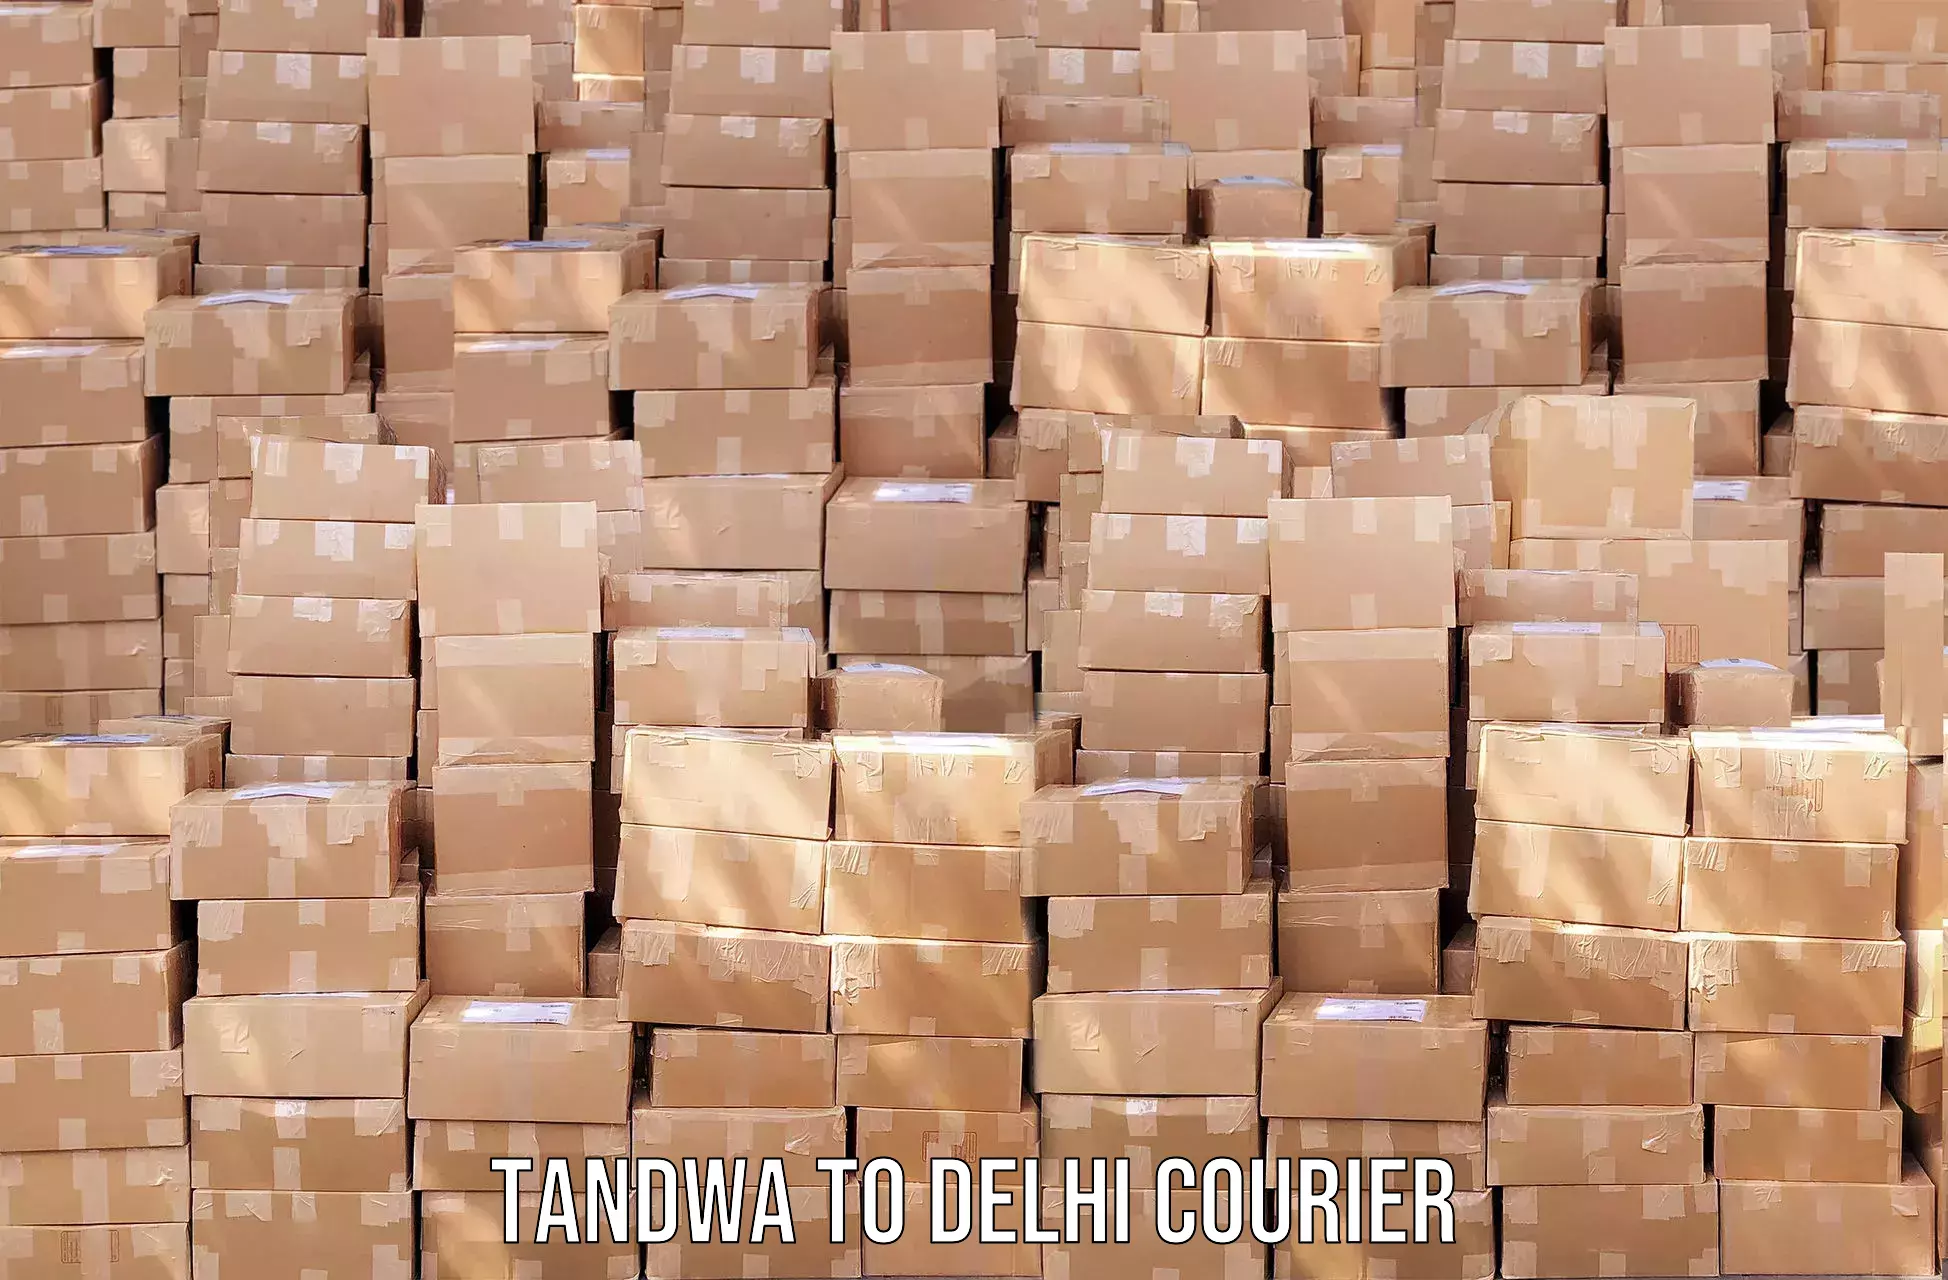 Digital courier platforms Tandwa to Jamia Millia Islamia New Delhi